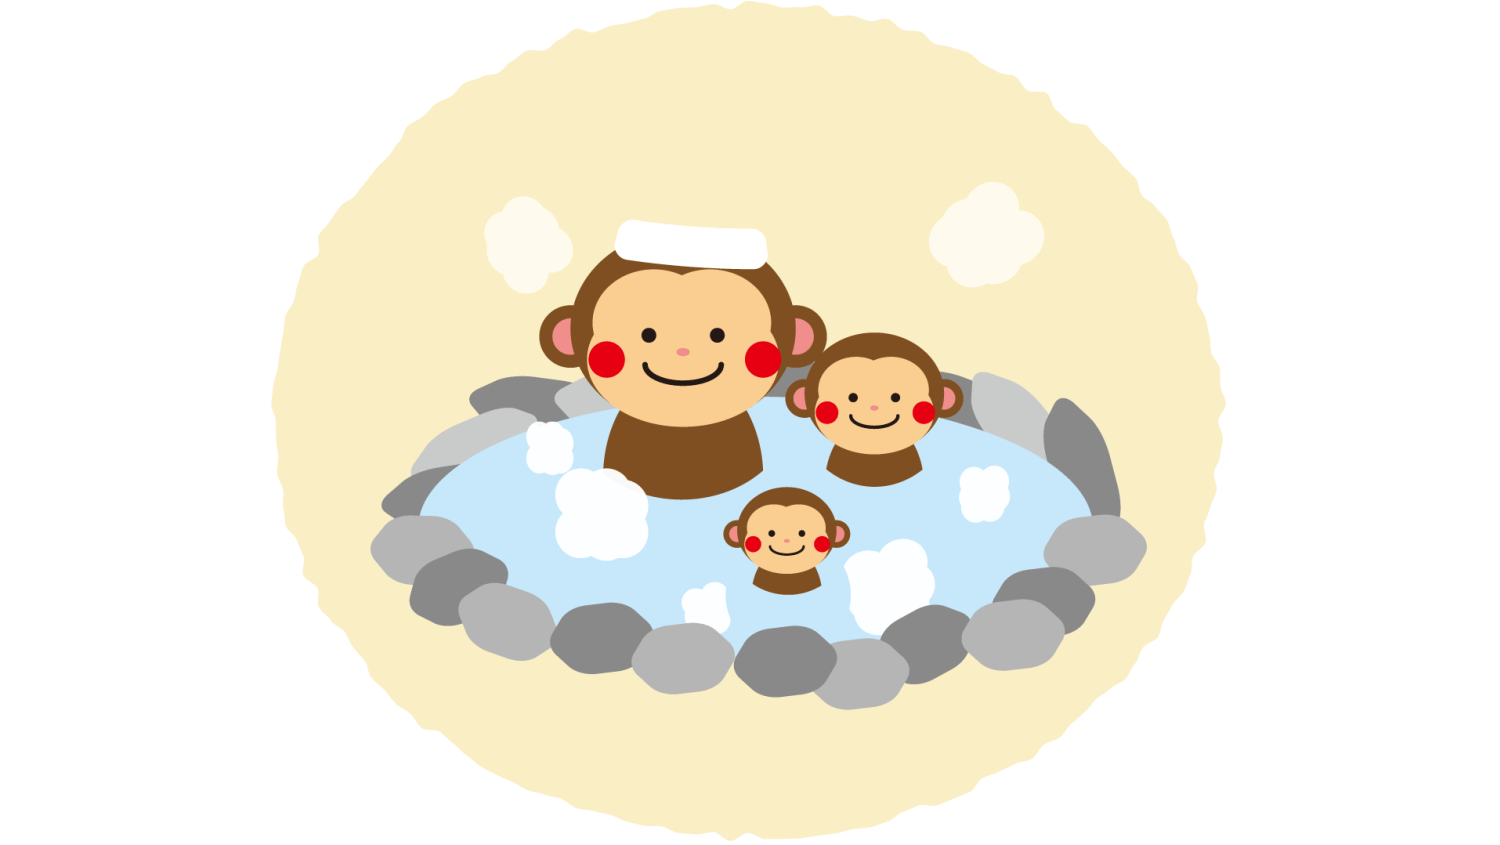 温泉に浸かっている猿の親子